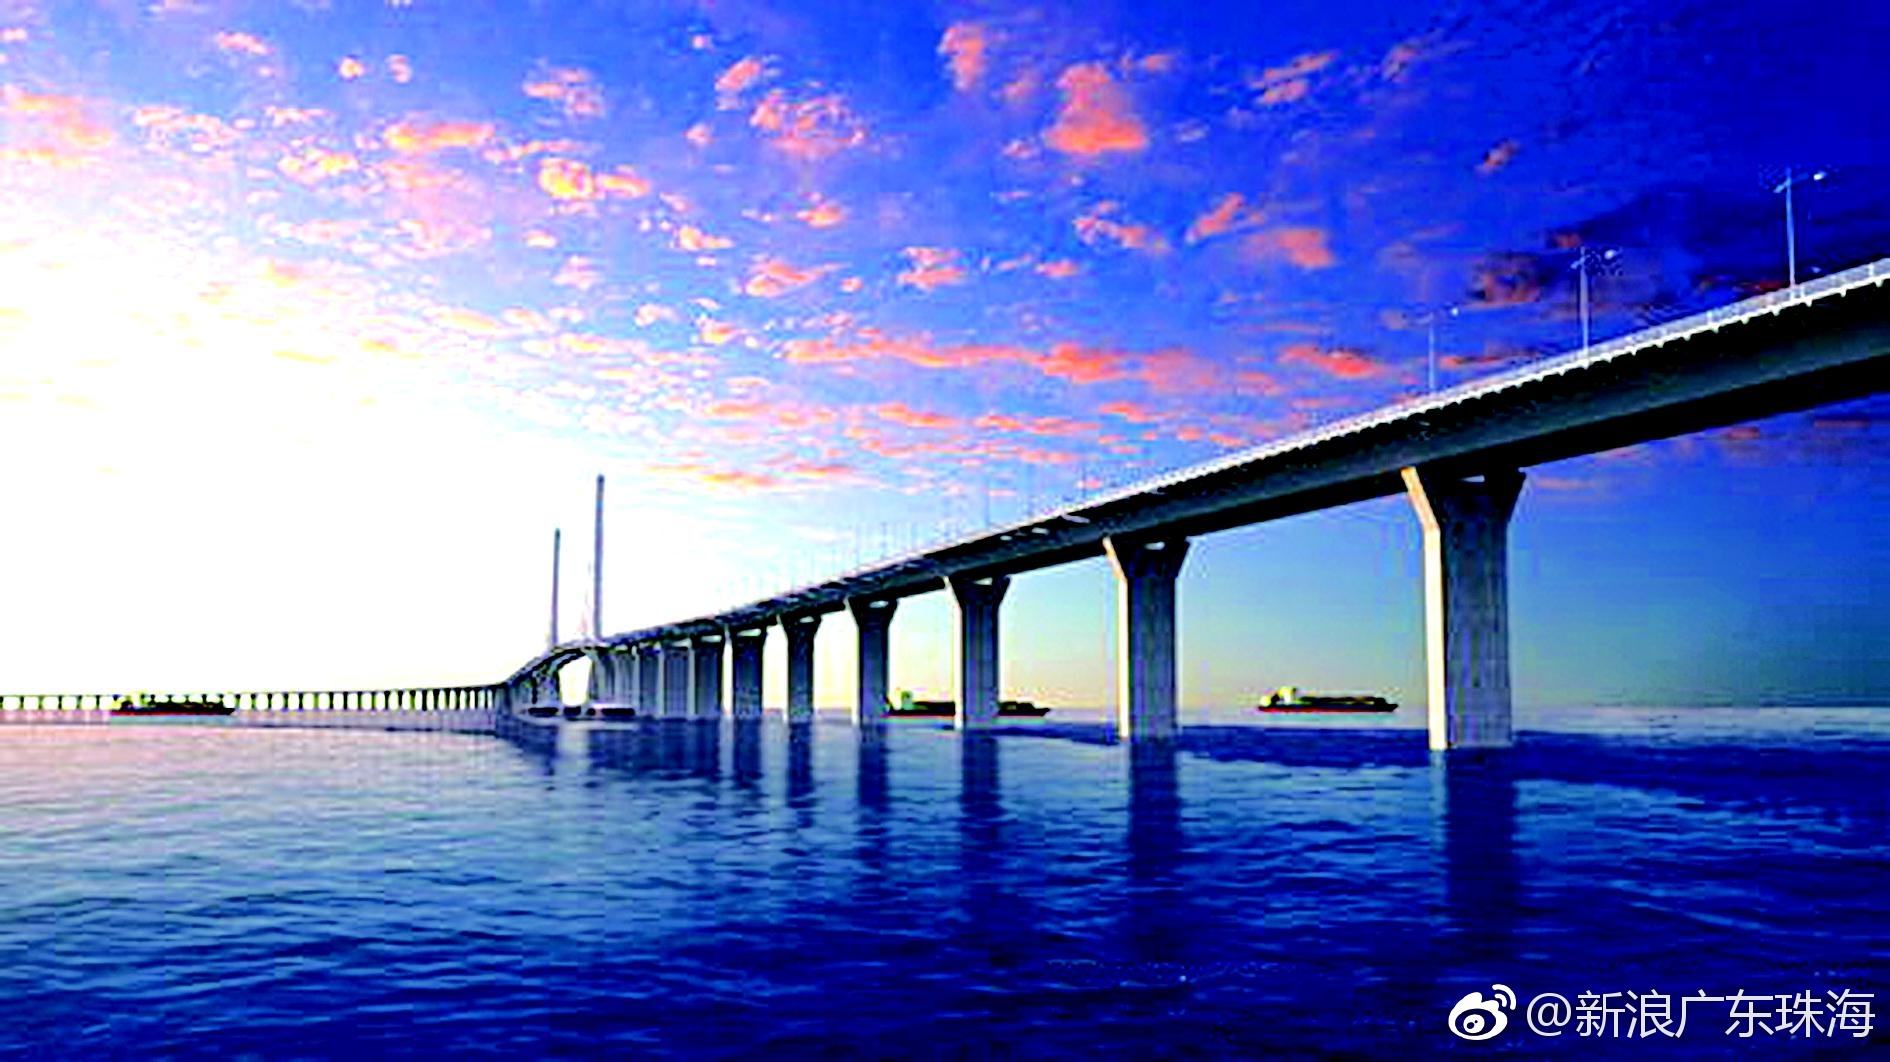 港珠澳大桥岛隧景观被誉为粤港澳最美新地标